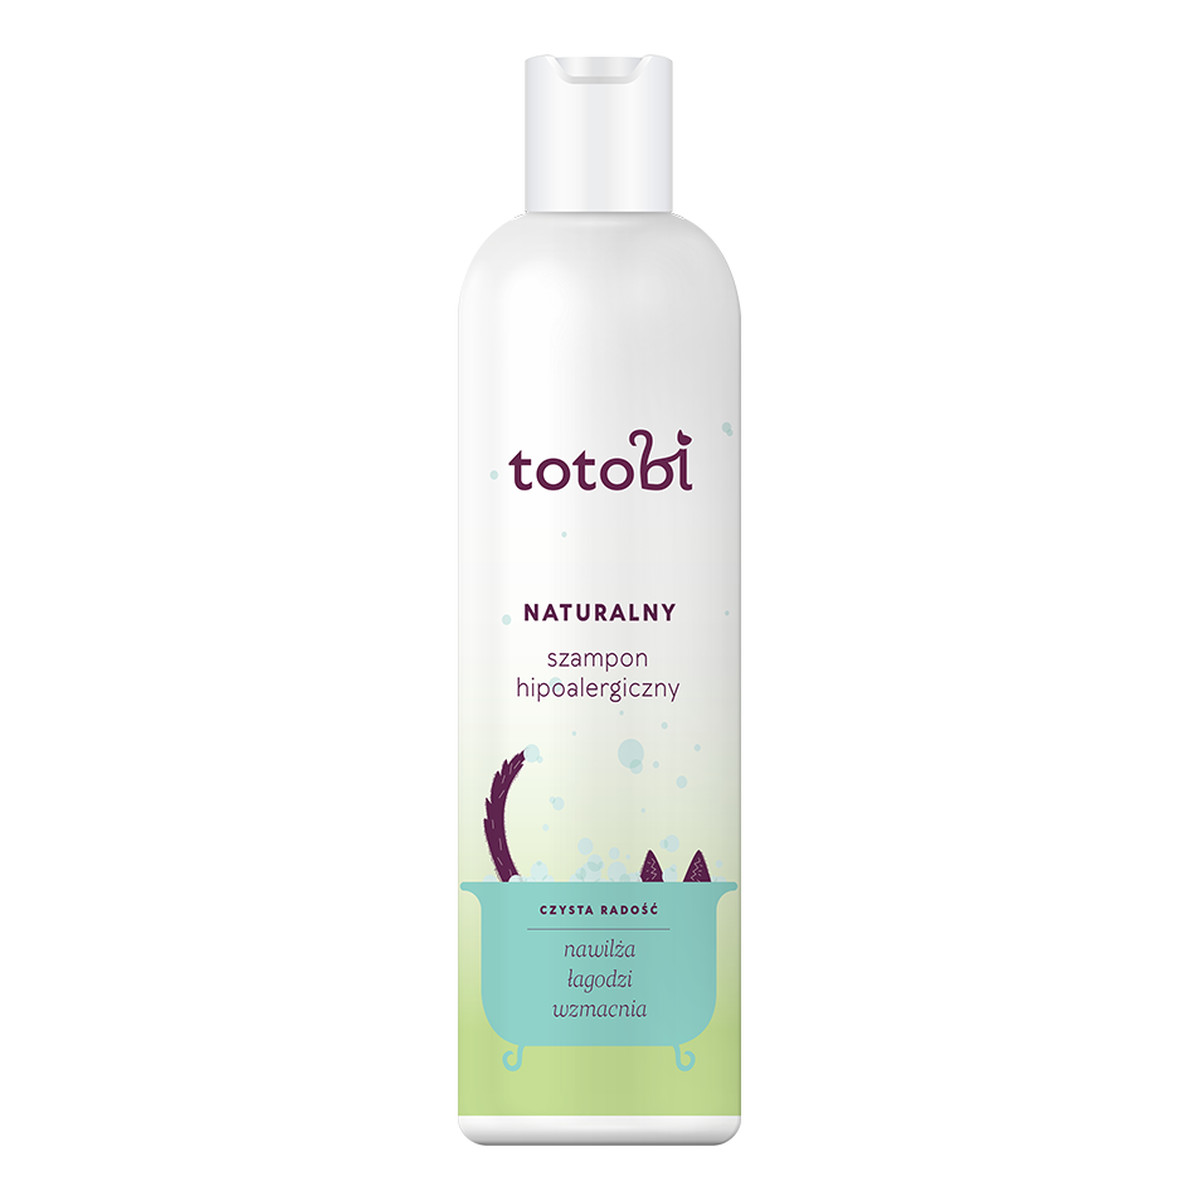 Totobi Naturalny szampon hipoalergiczny dla zwierząt 300ml